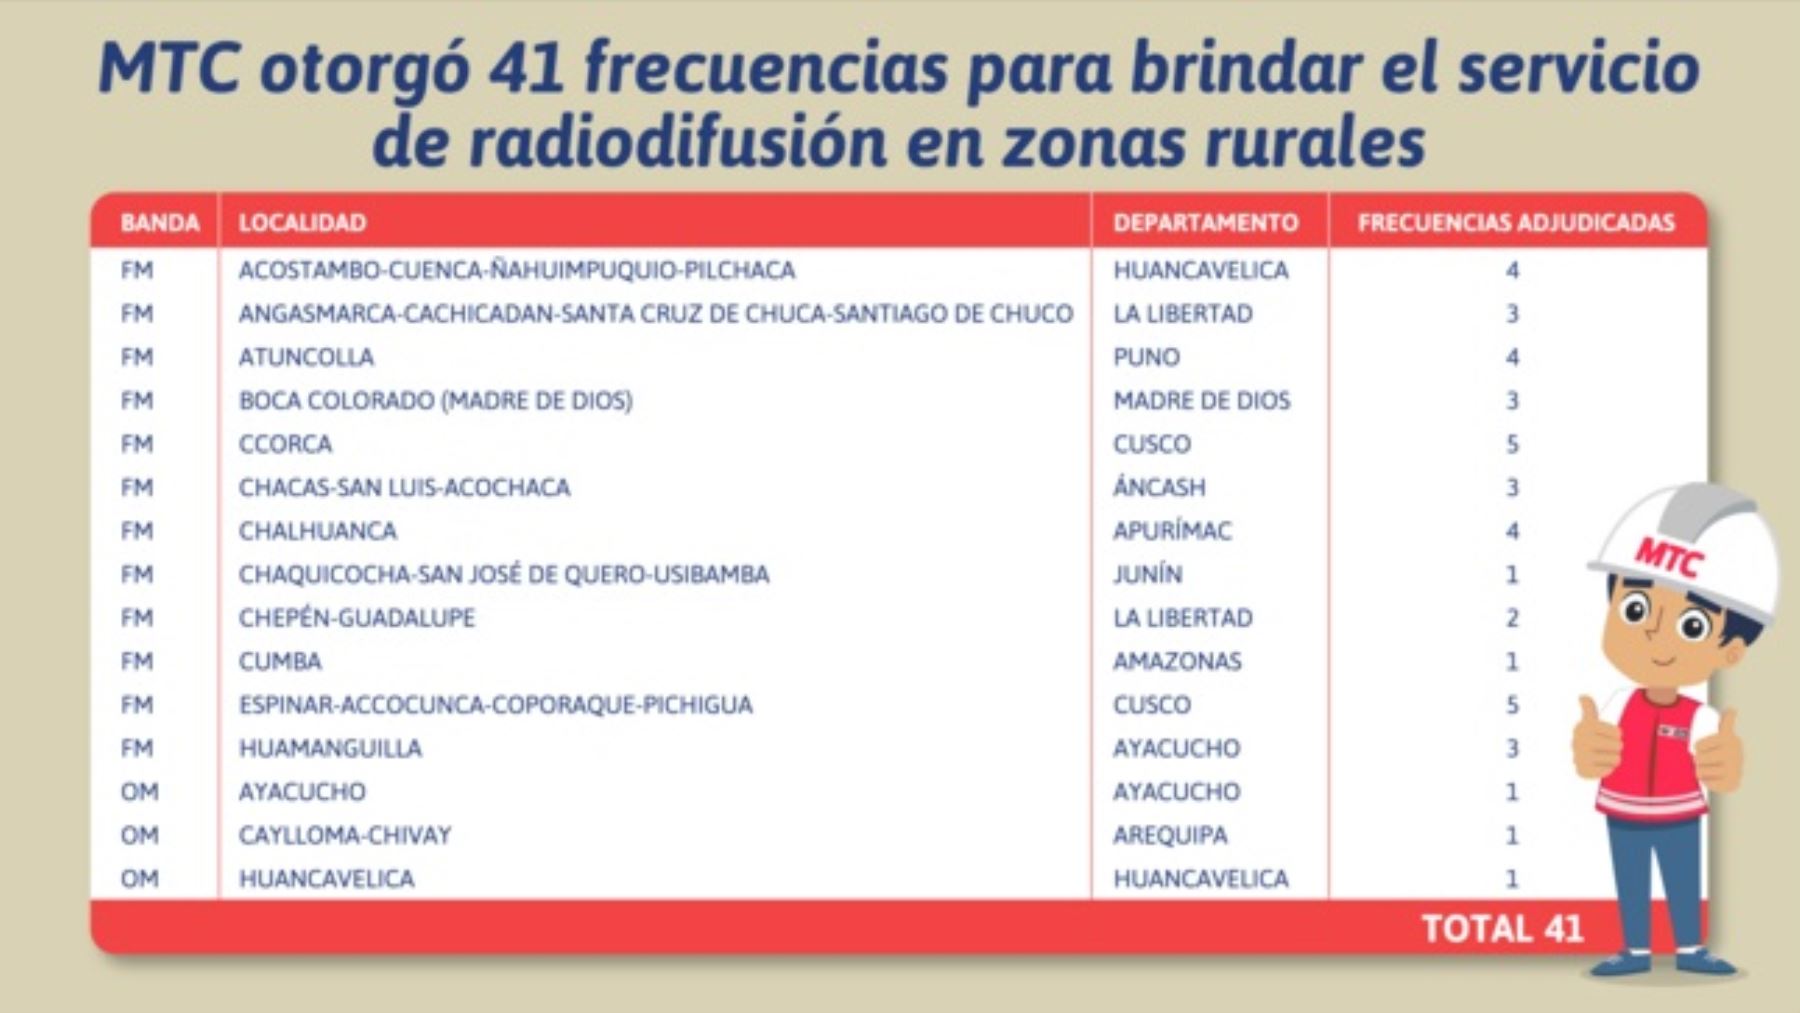 MTC otorgó 41 frecuencias para brindar el servicio de radiodifusión en zonas rurales